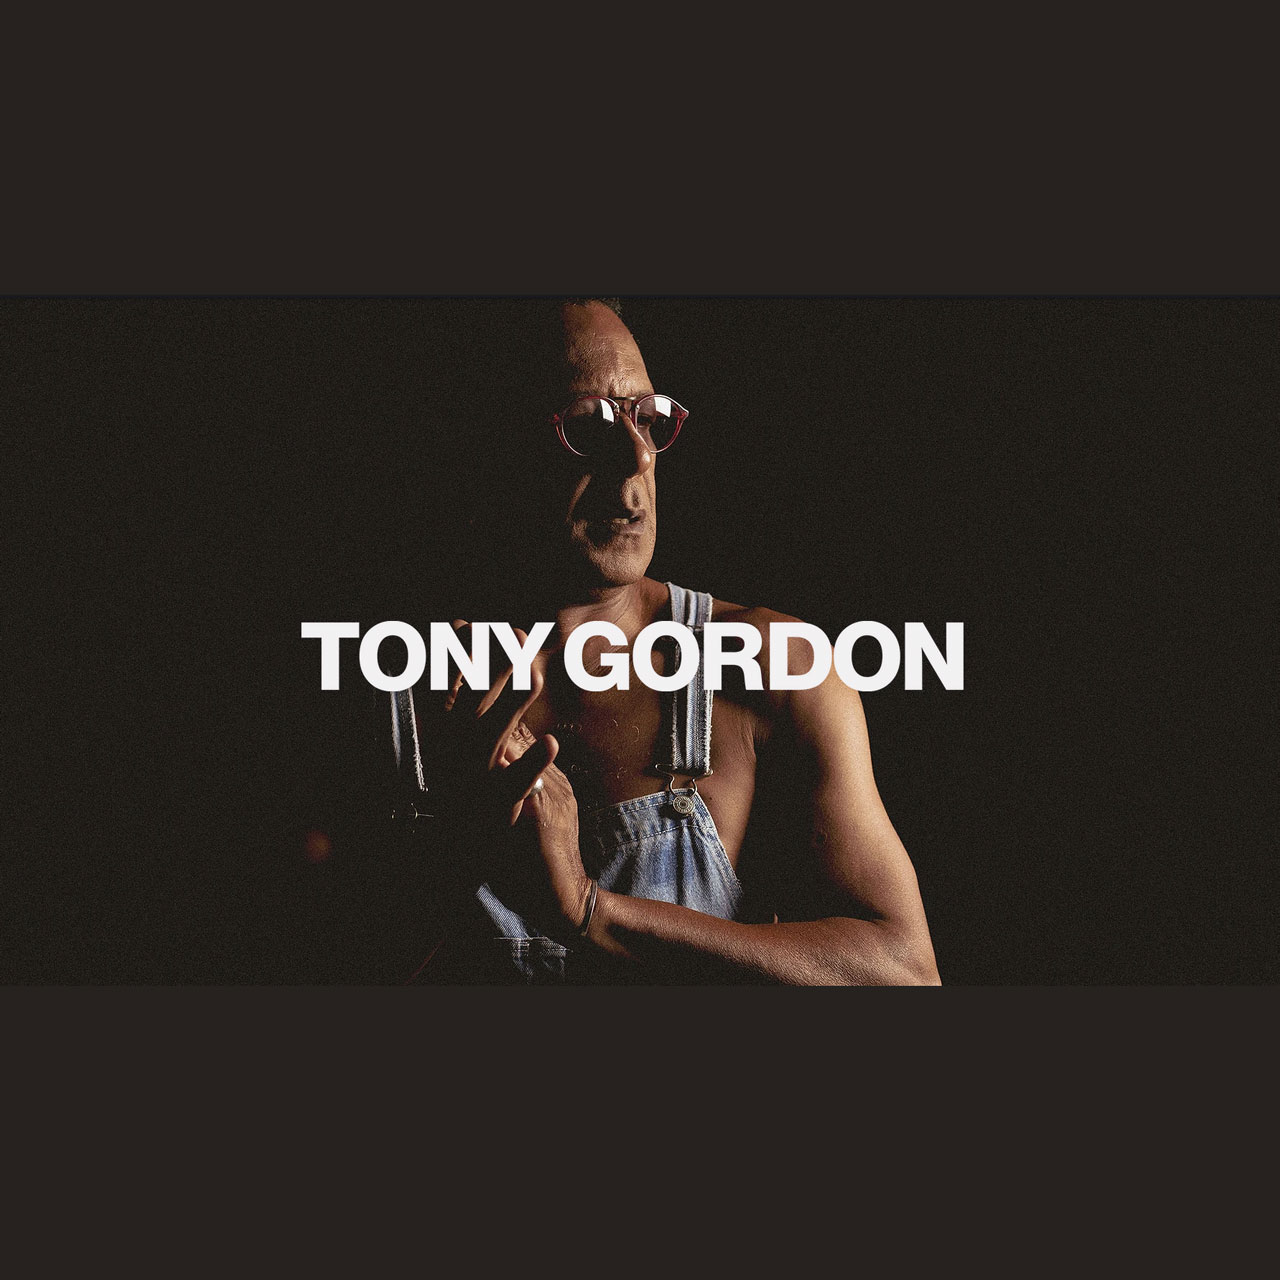 Tony Gordon